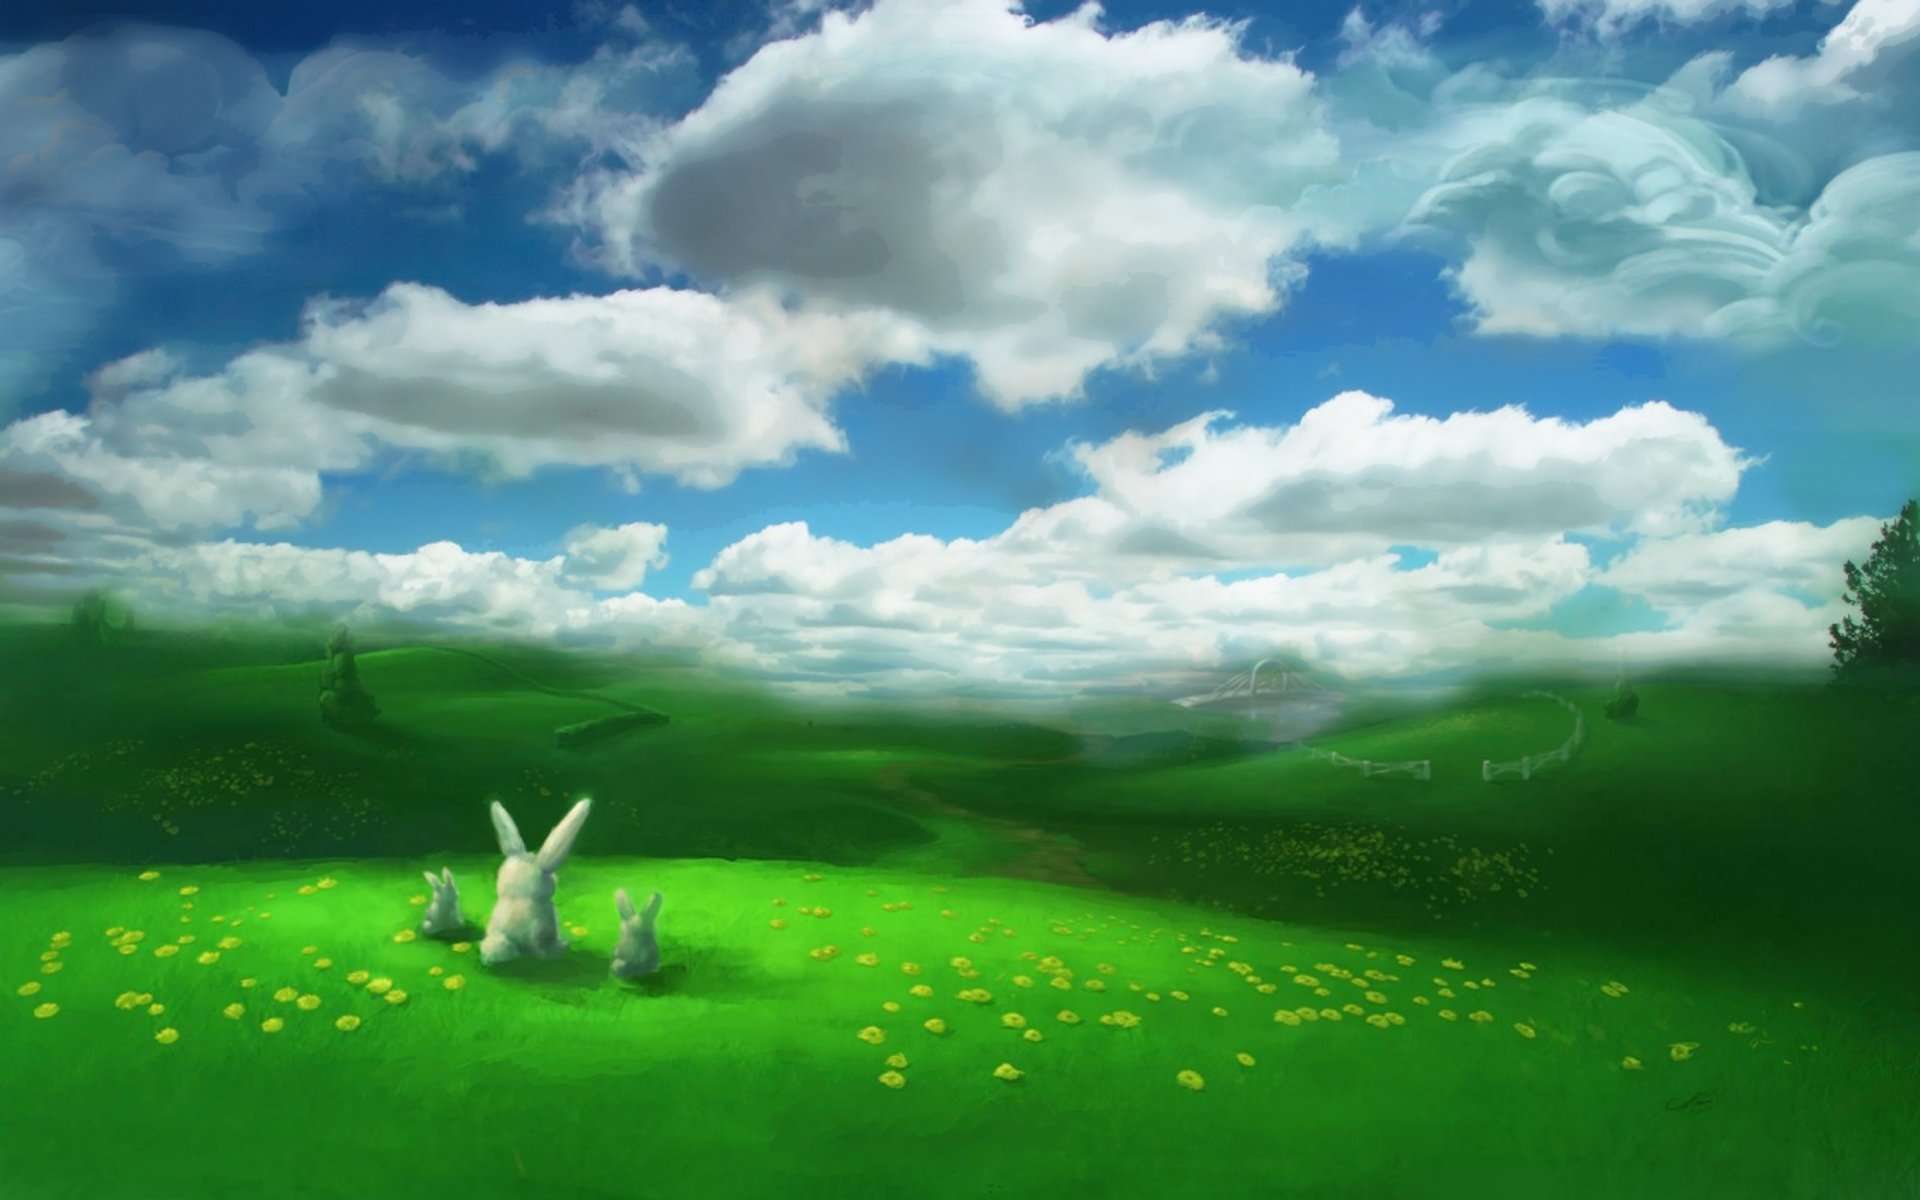 bunnies, Landscapes, Fields, Artwork Wallpaper